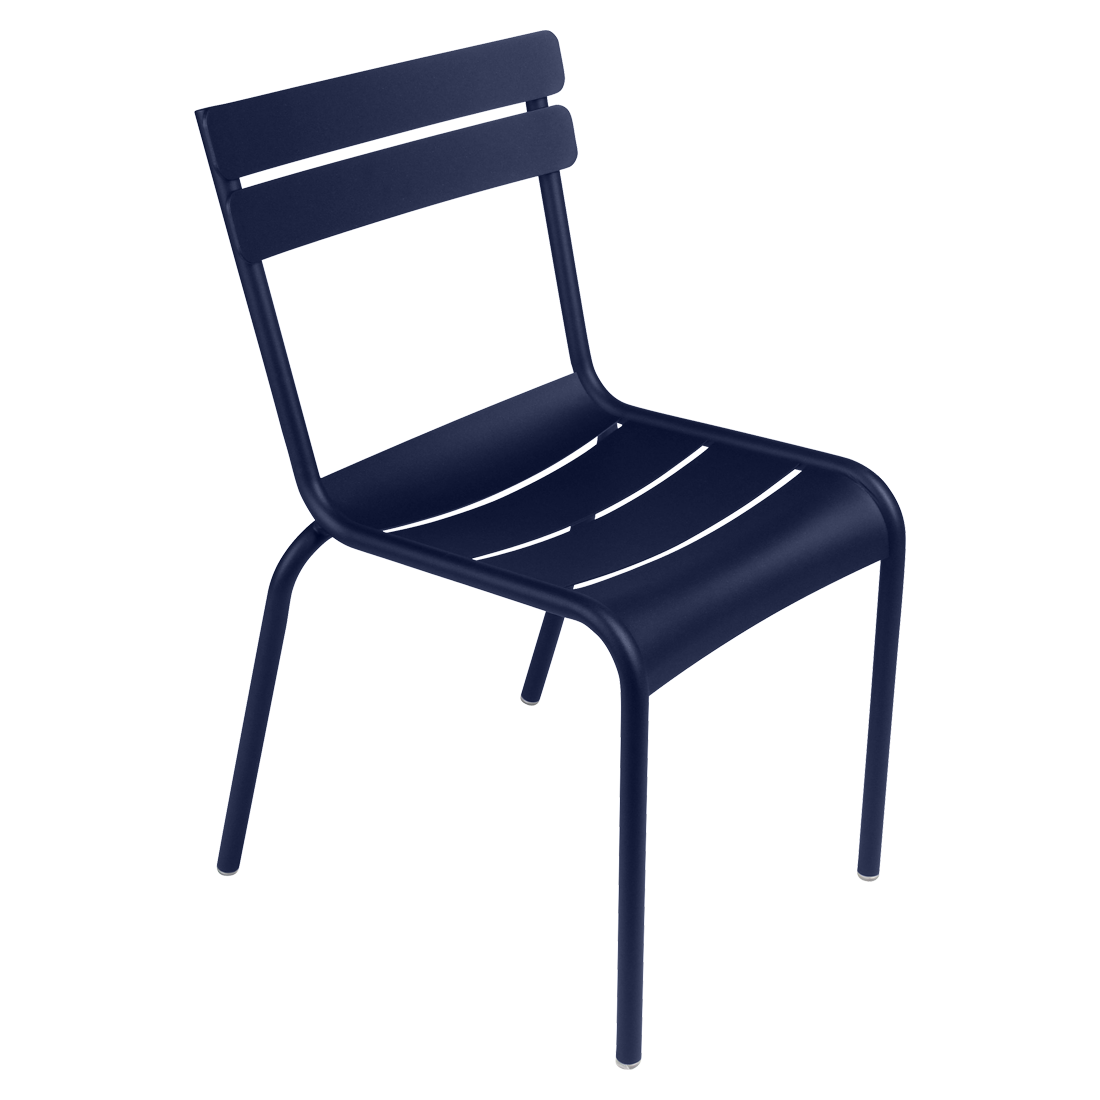 chaise de jardin, chaise metal, chaise fermob, chaise terrasse, chaise bleu